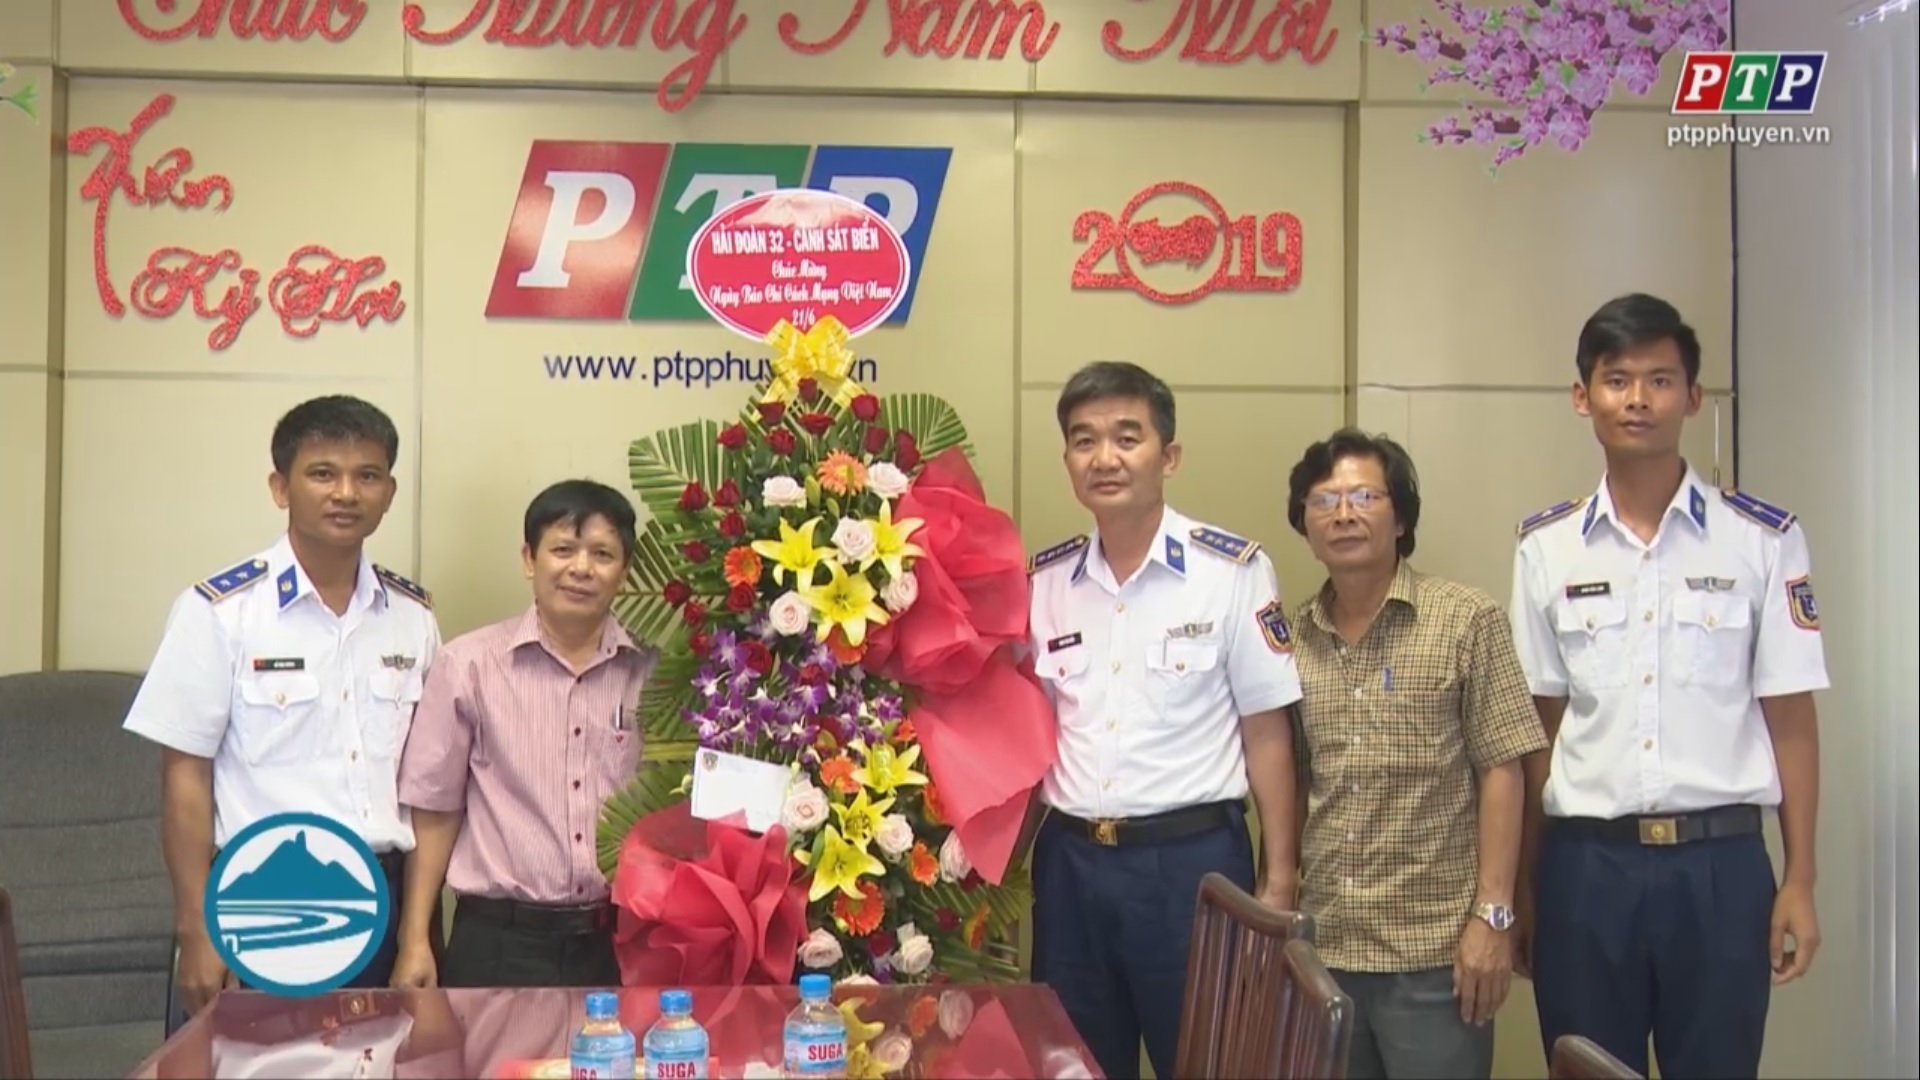 Các cơ quan, đơn vị thăm Đài PT&TH Phú Yên nhân ngày Báo chí Cách mạng Việt Nam